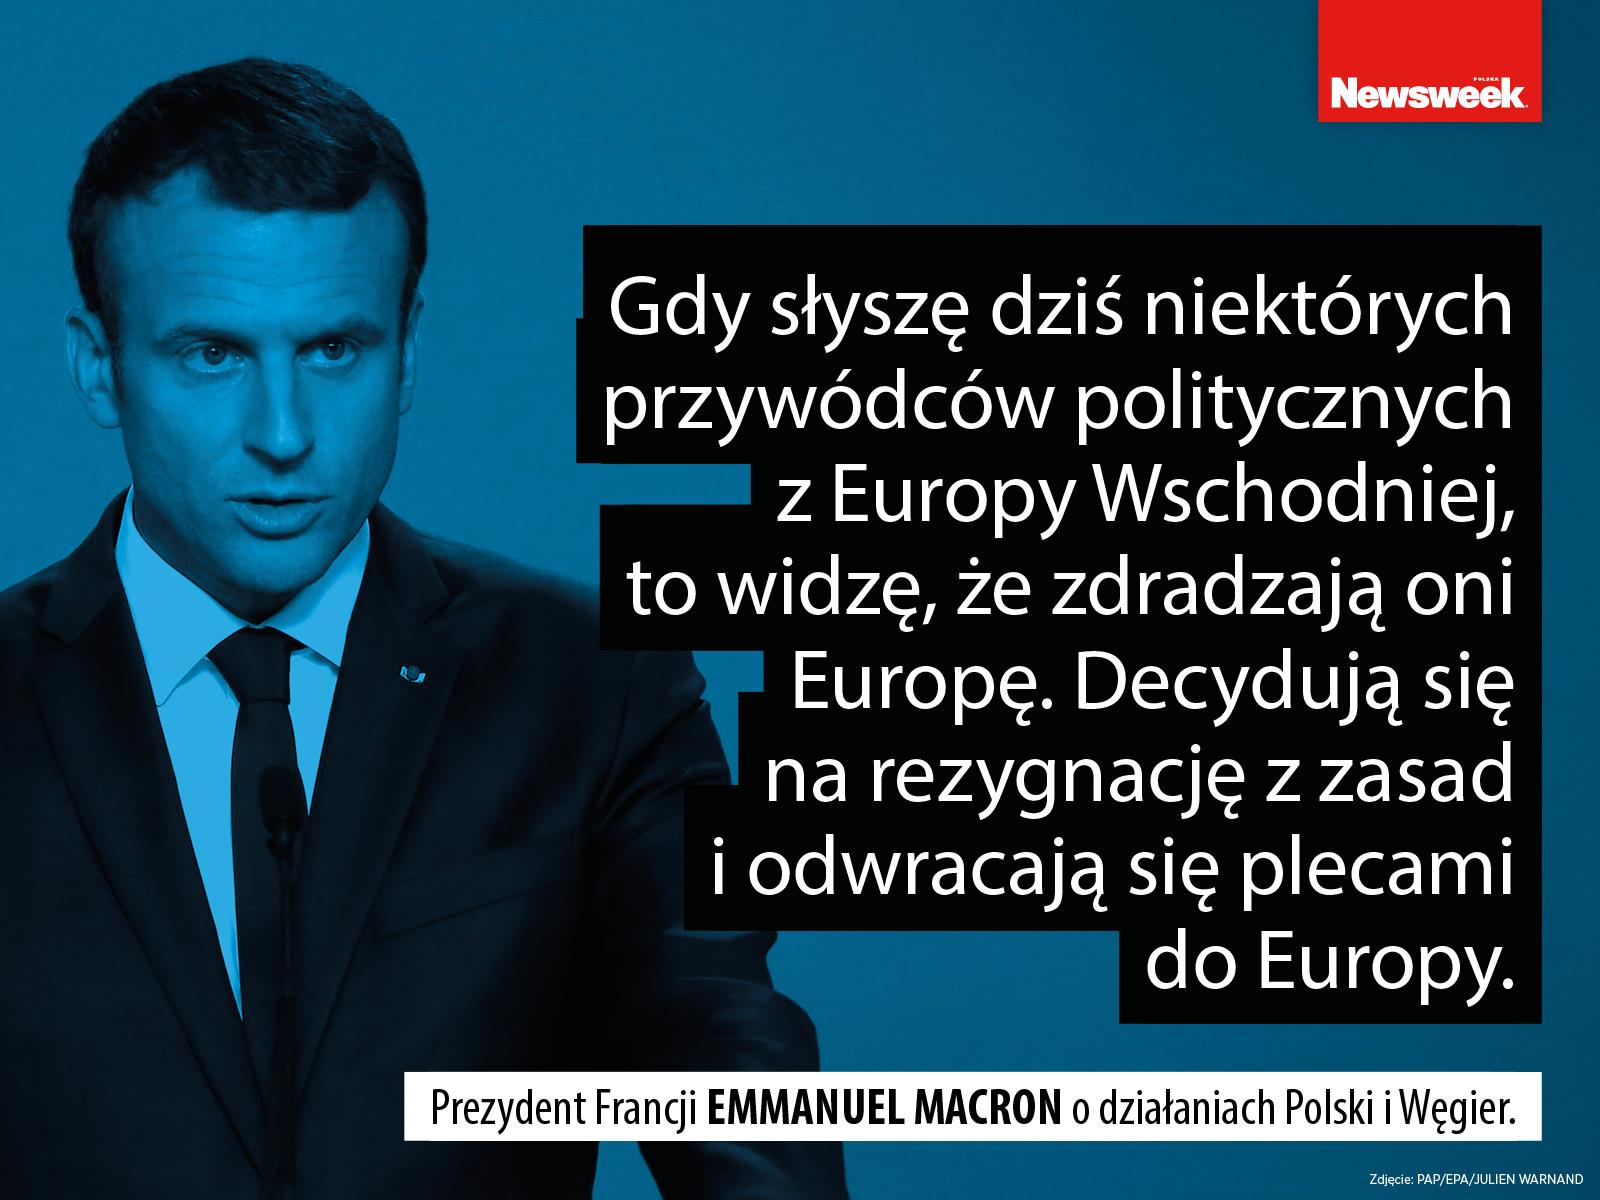 Emmenuel Macron Francja polityka Unia Europejska Polska Węgry